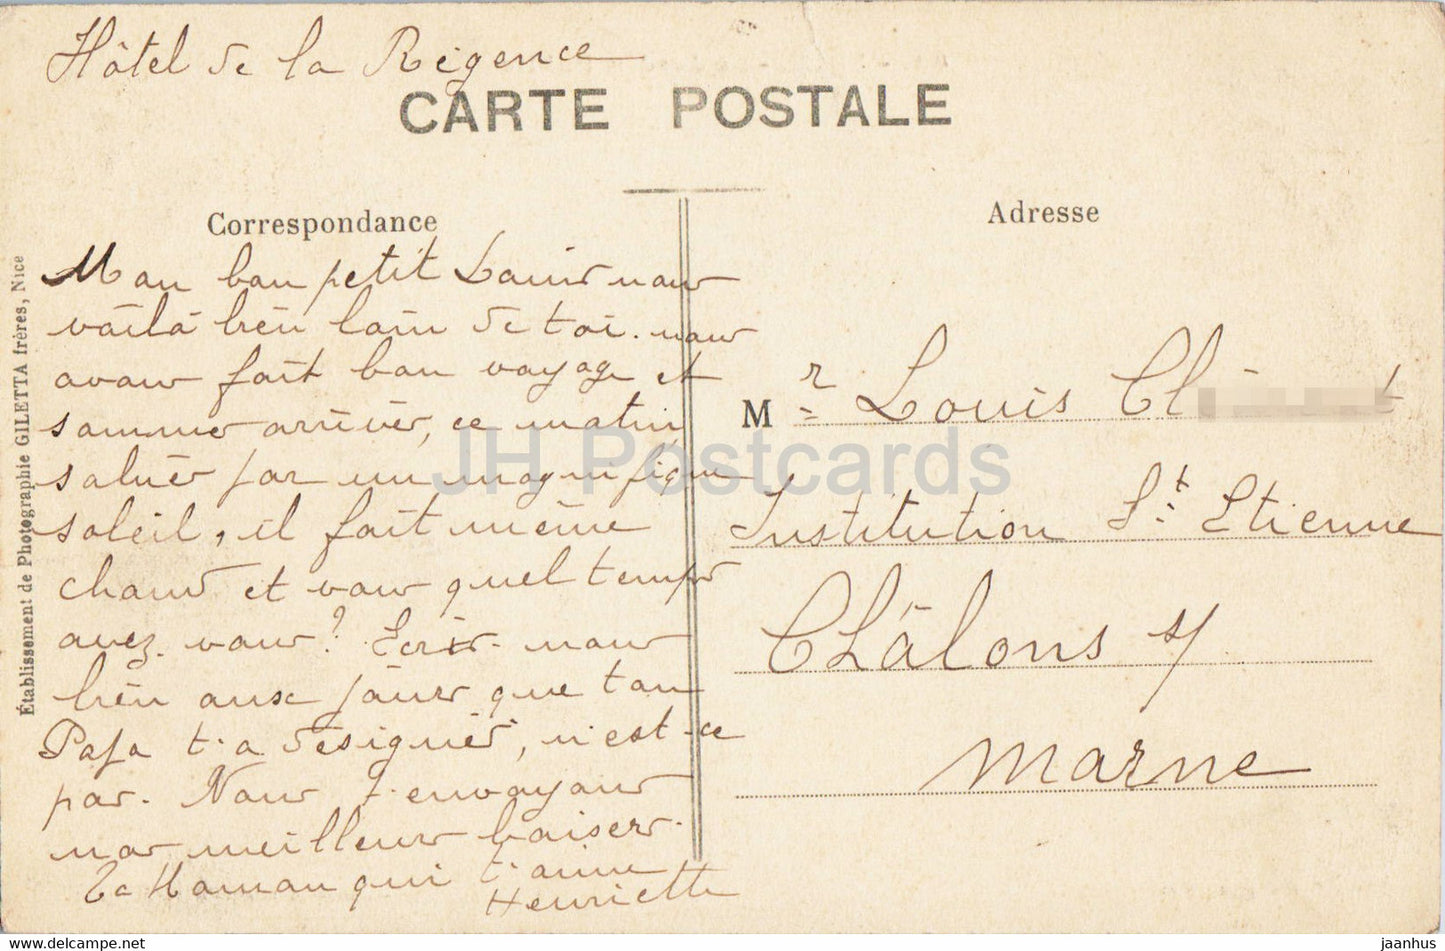 Nice - Le Jardin Public - 82 - old postcard - France - used